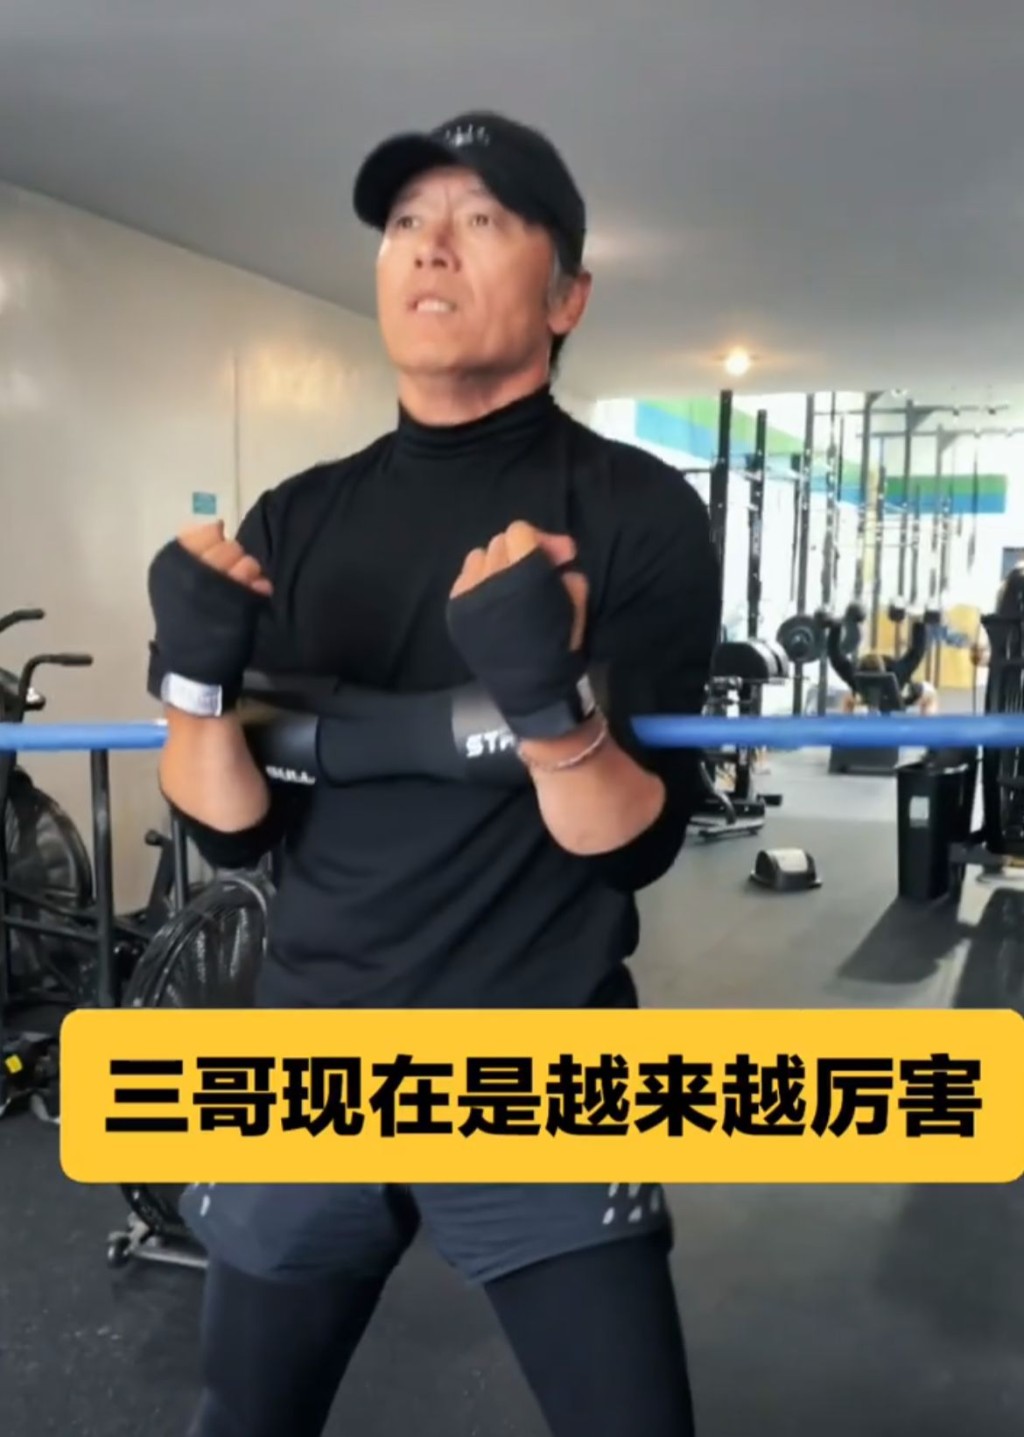 苗僑偉的健身影片去年11月於網上流出。